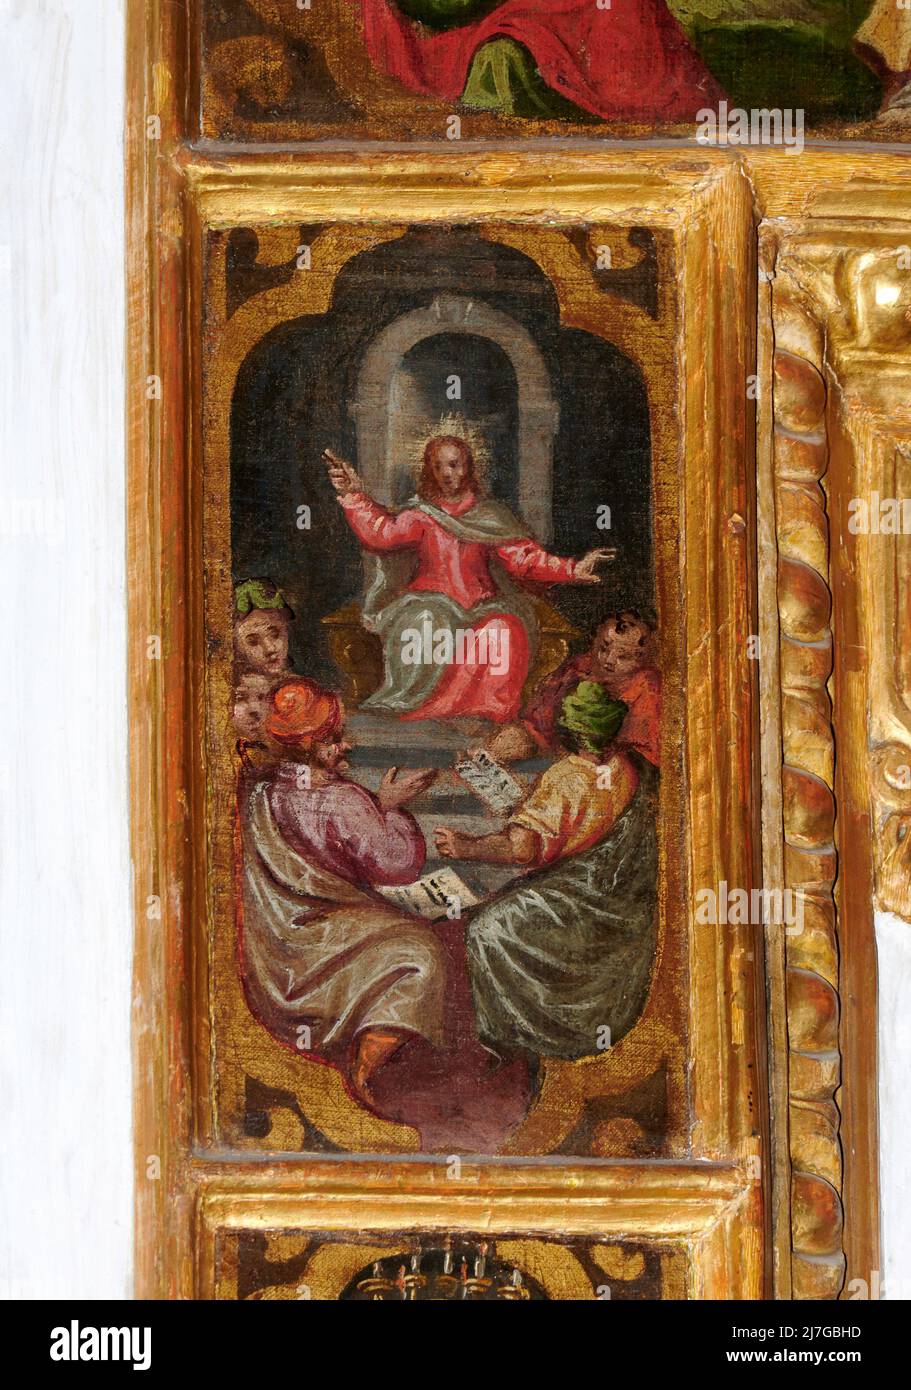 Gesù tra i dottori , particolare da “Sacra Famiglia con S.Giovannino e i Misteri del Rosario” - olio su tela - pittore bresciano - 1668 - Cortine di N Foto de stock